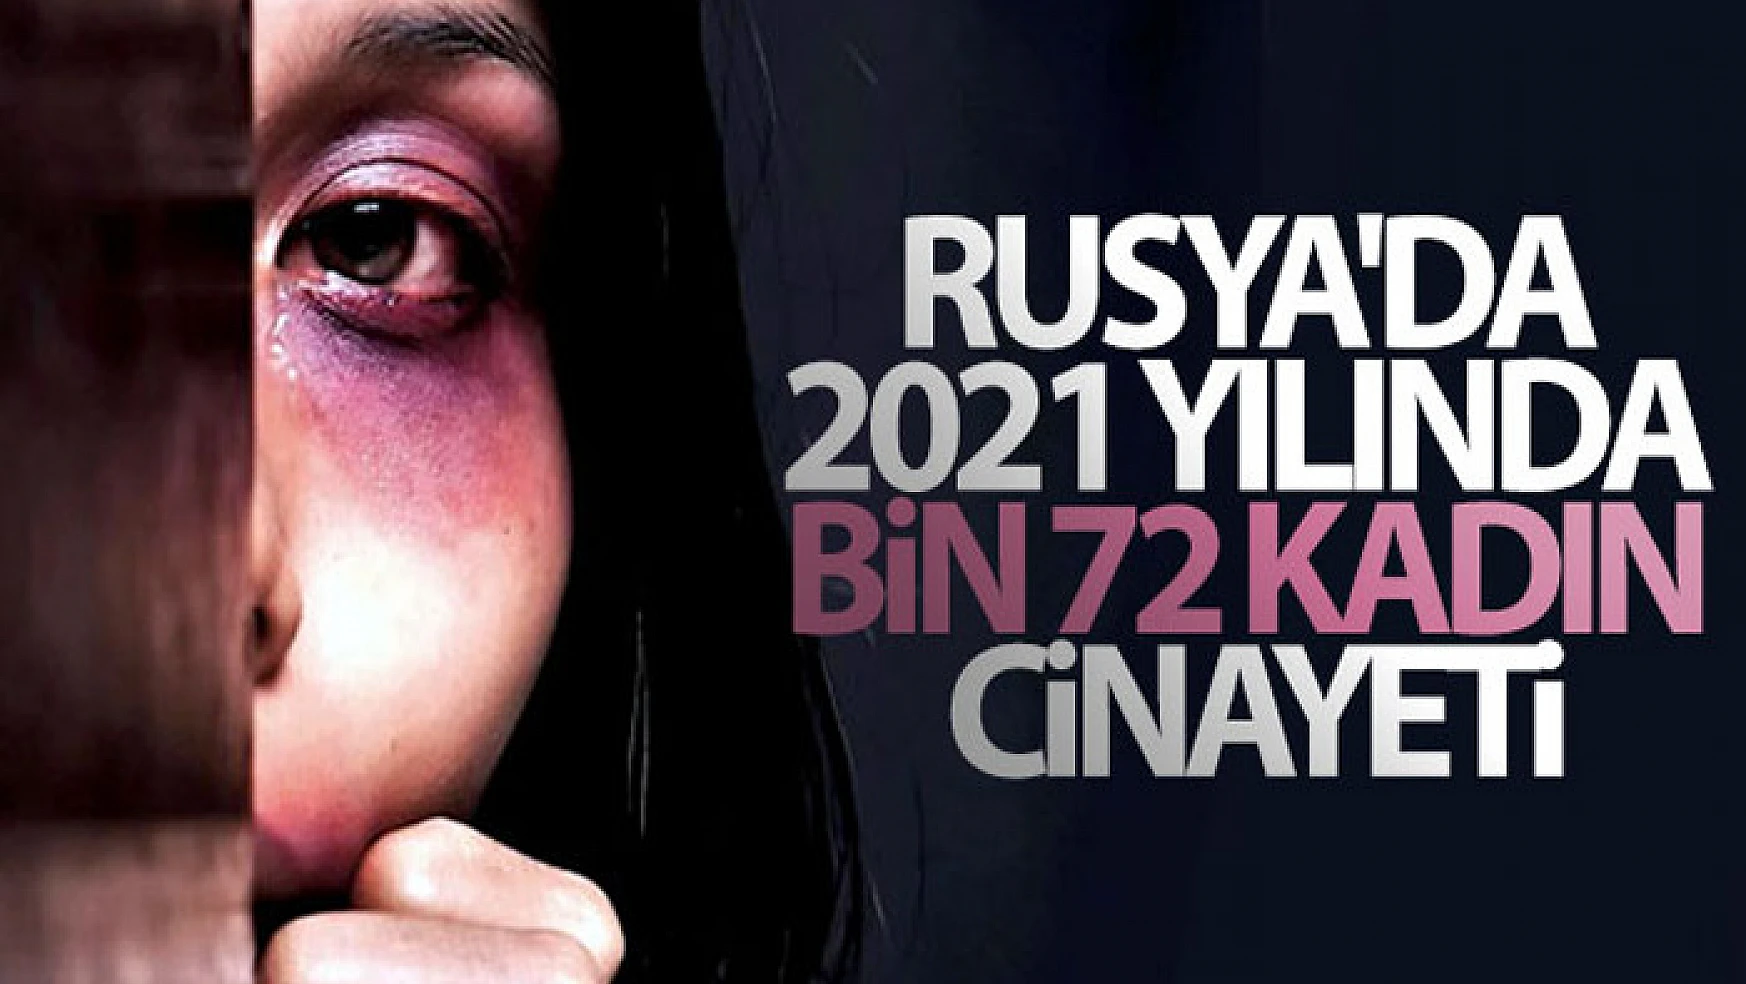 Rusya'da 2021 yılında bin 72 kadın cinayeti işlendi